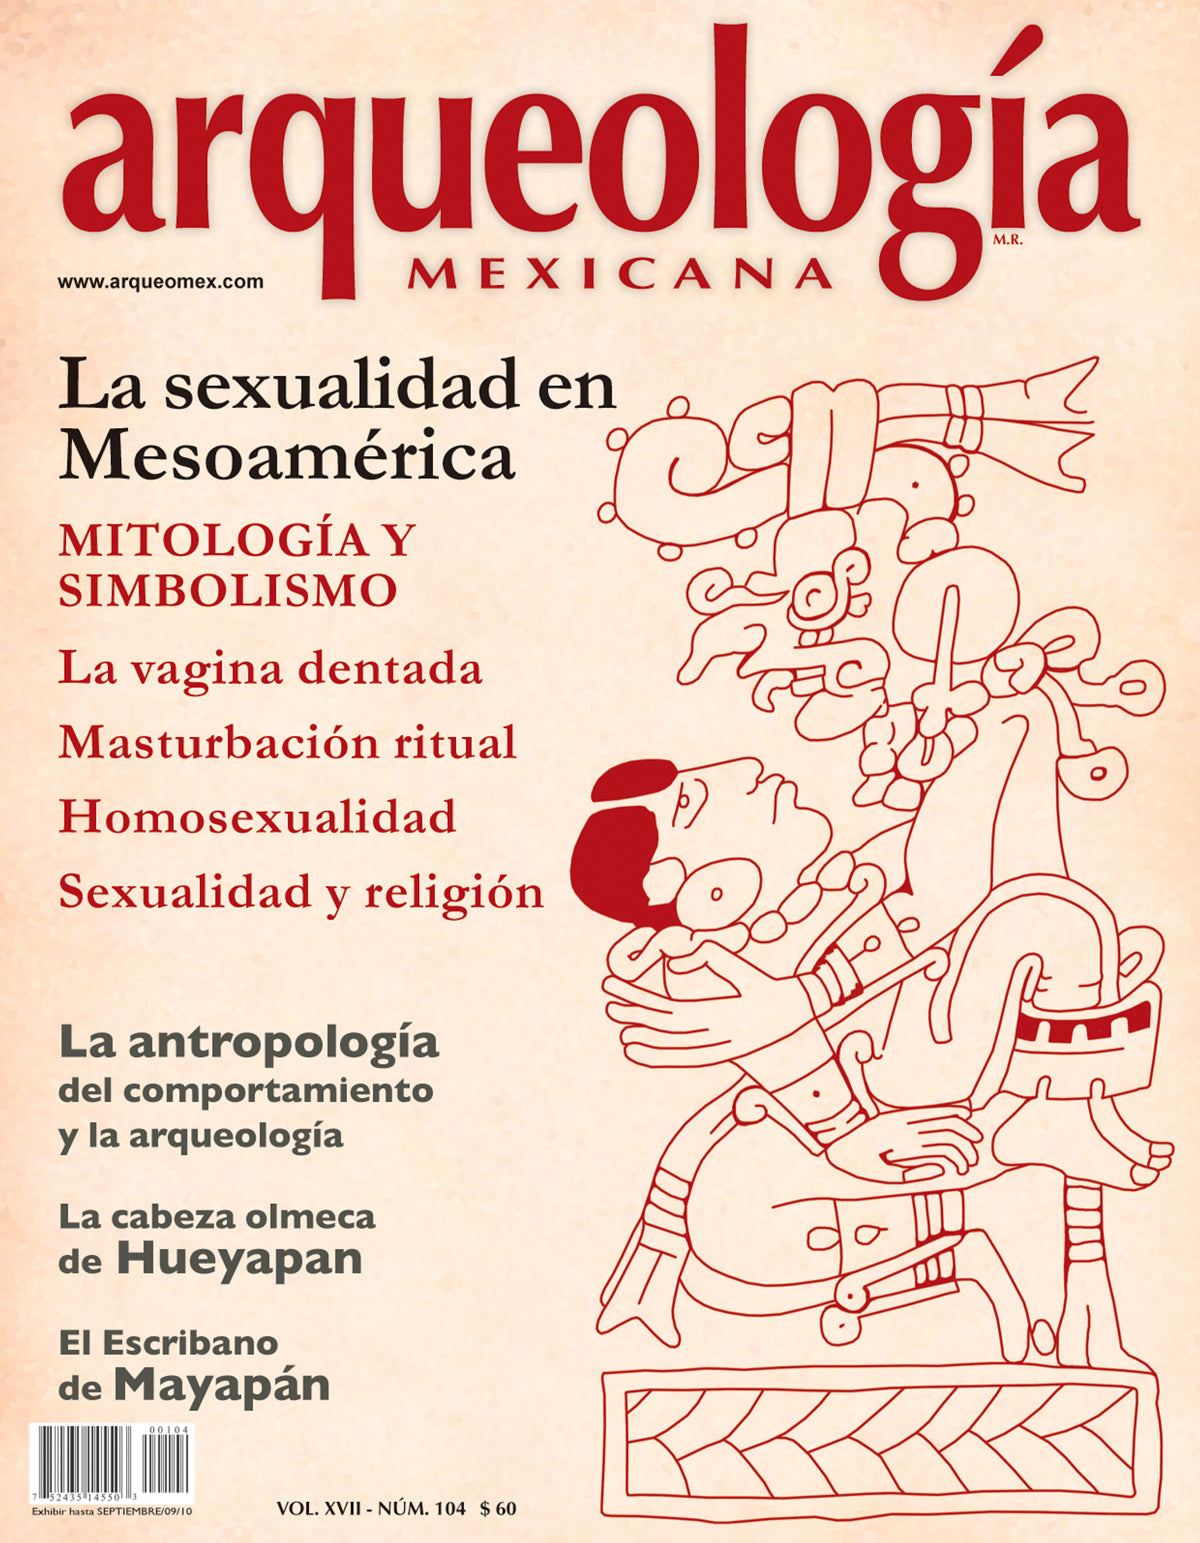 La sexualidad en Mesoamérica